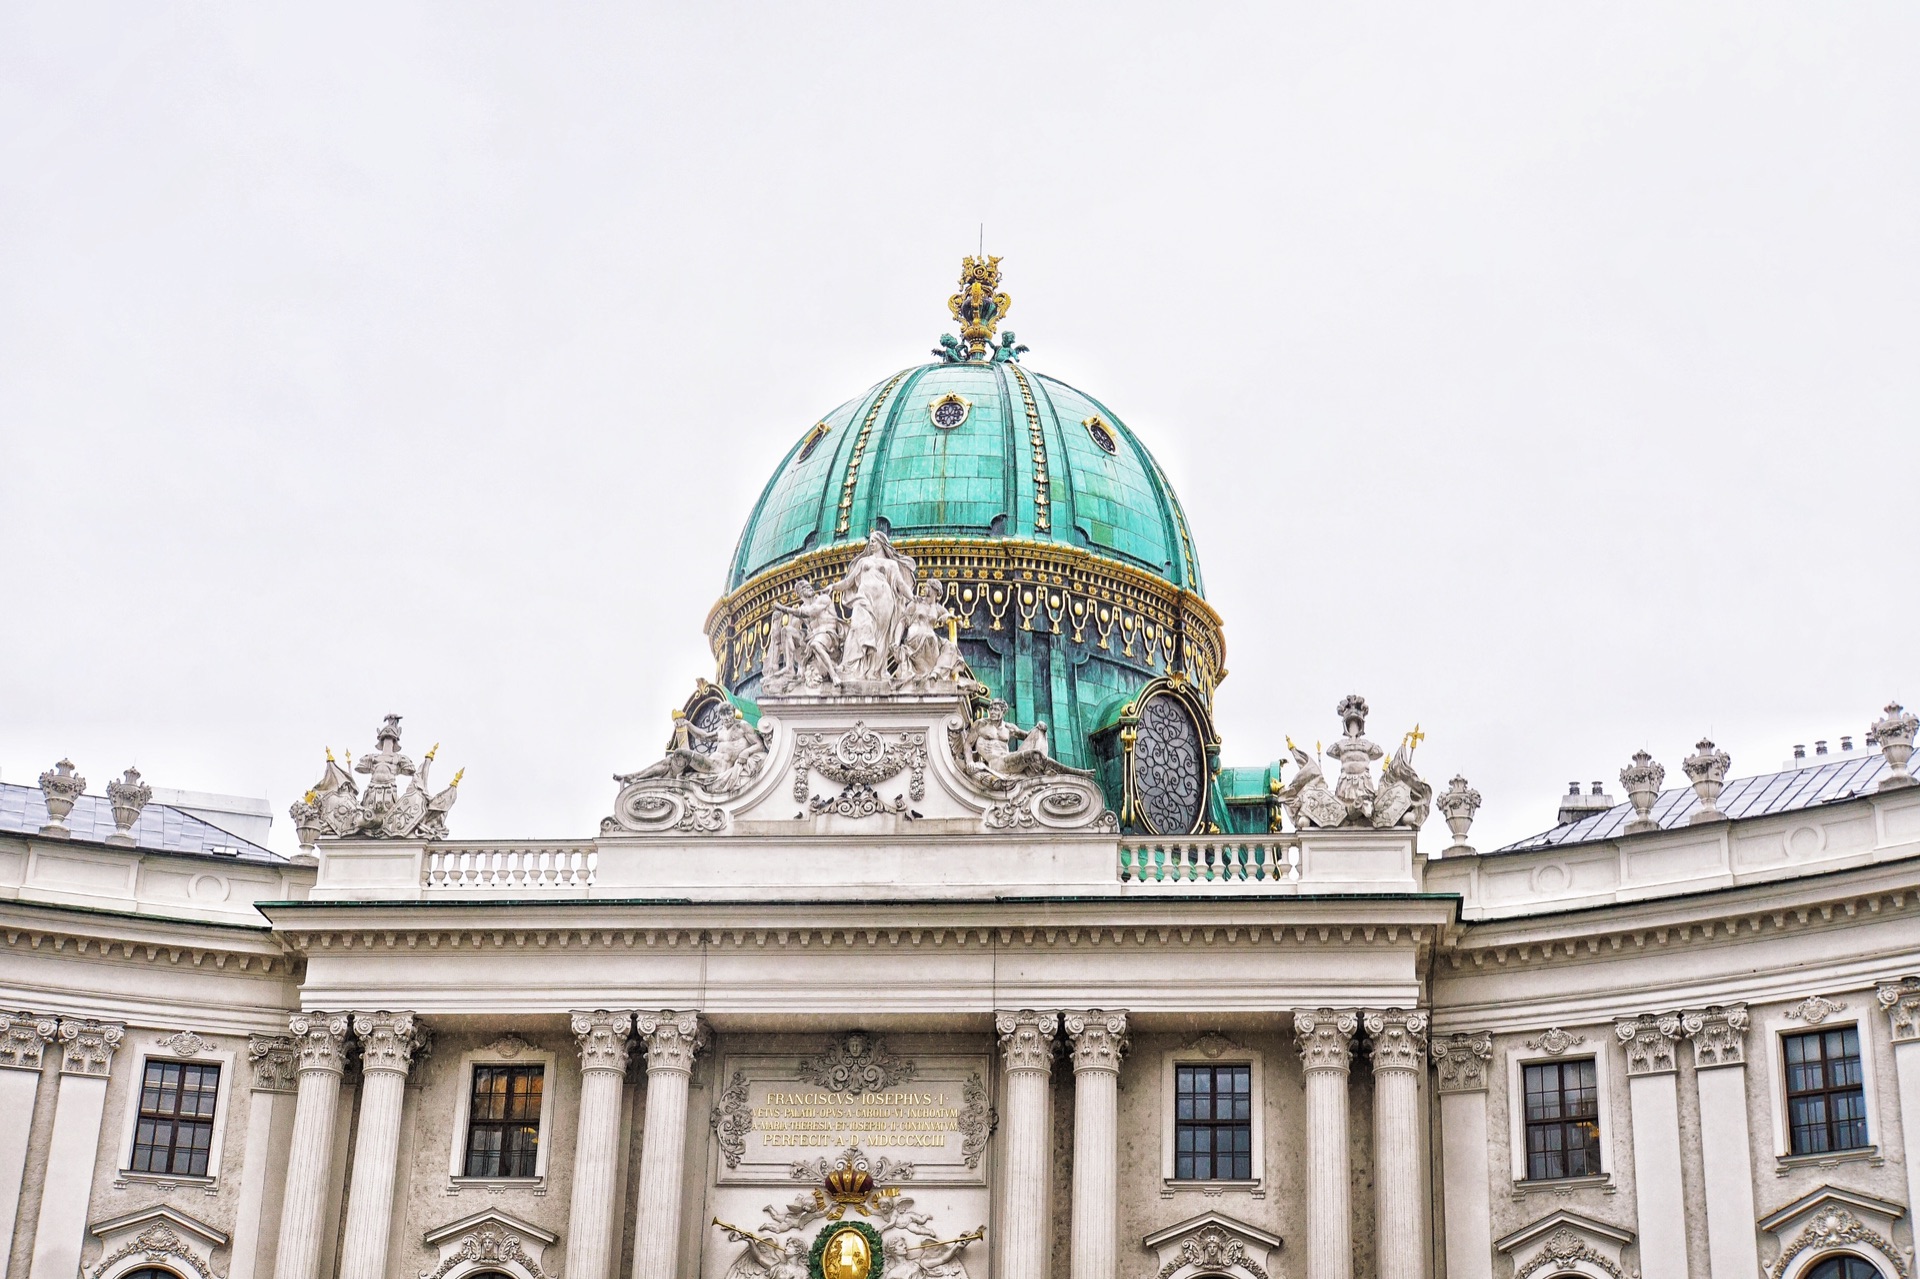 维也纳必游景点 茜茜公主博物馆位于霍夫堡宫宫廷议会的回廊中,博物馆